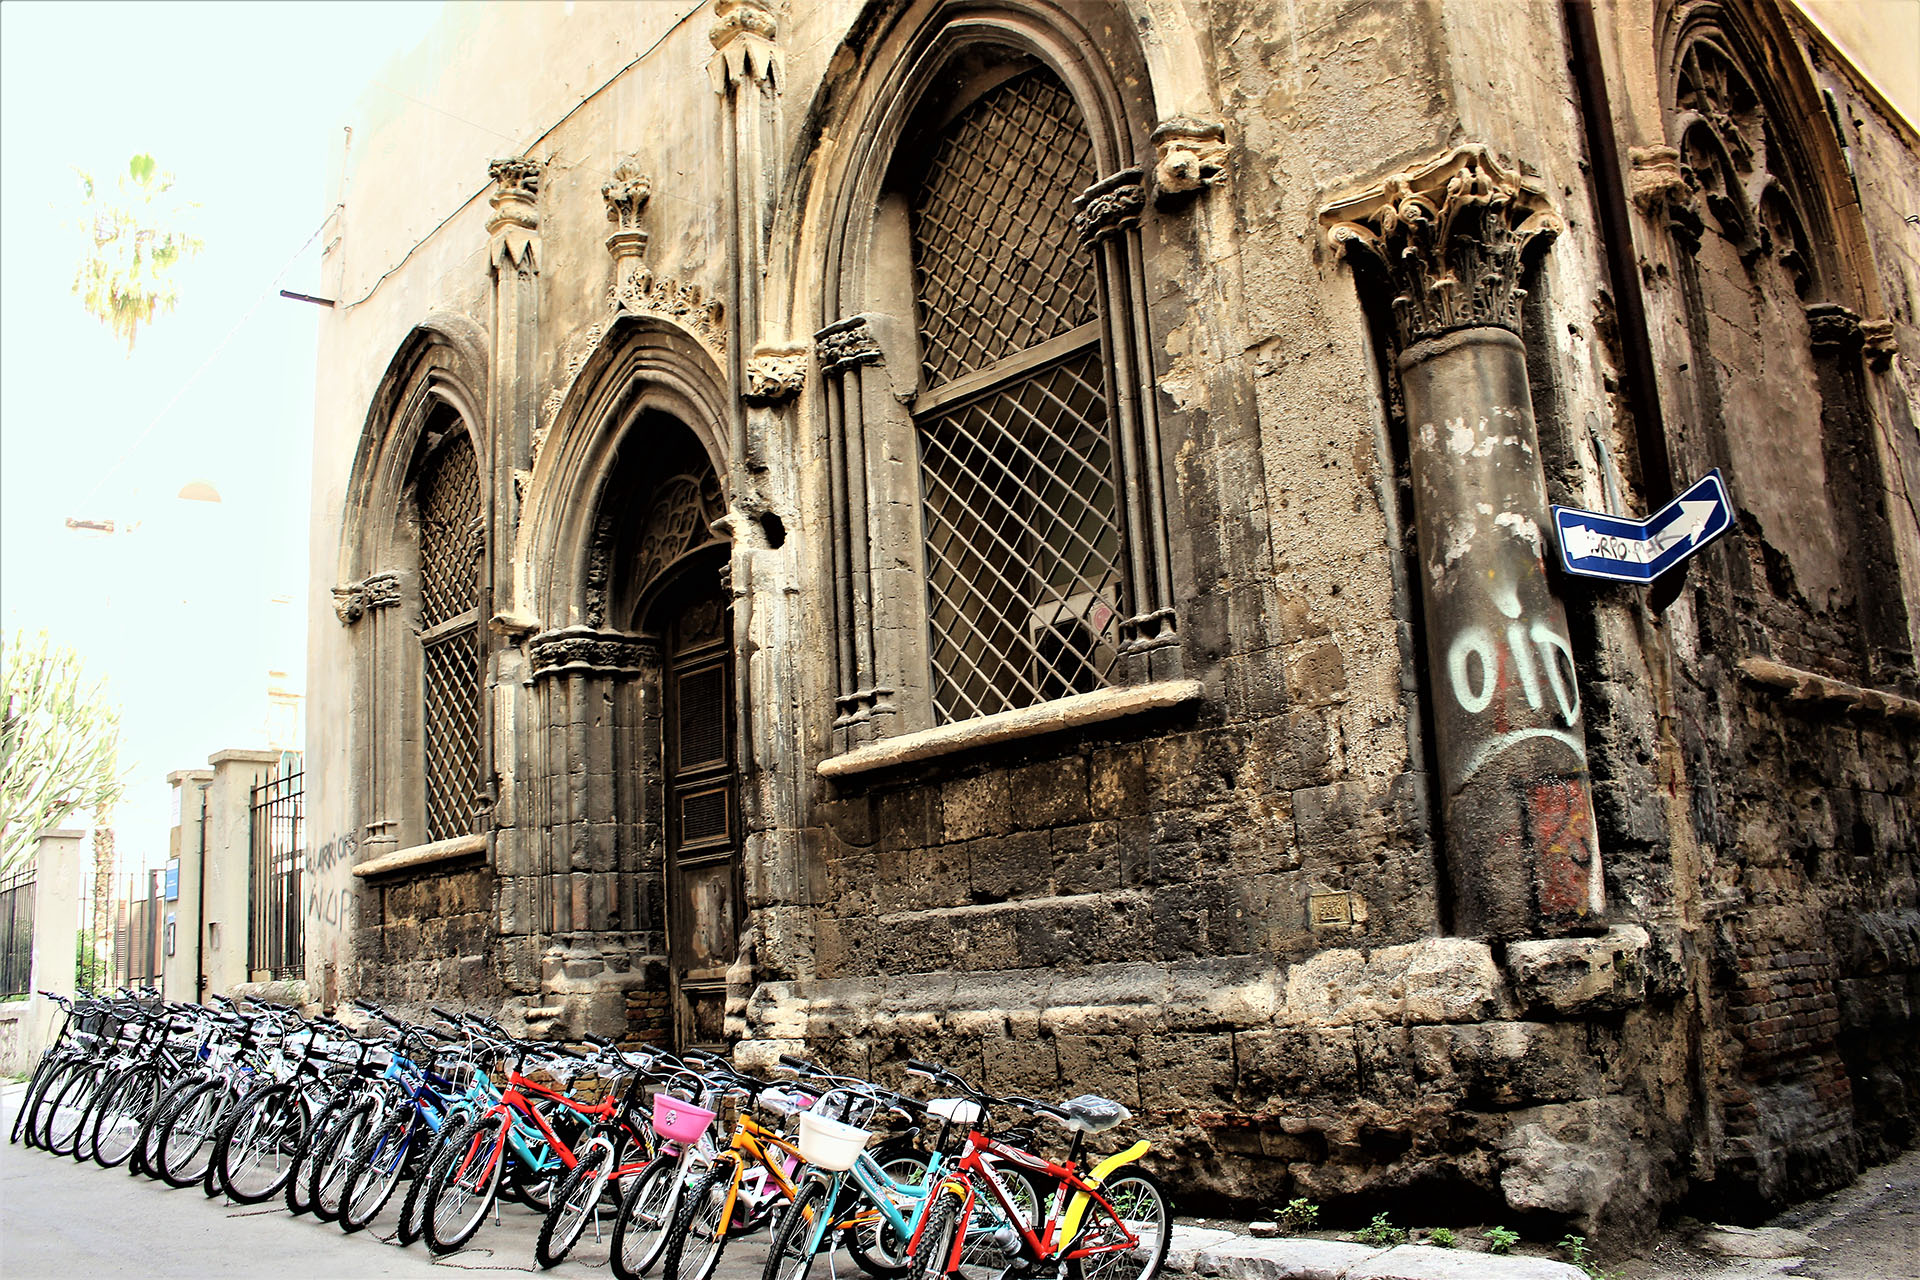 via Divisi, Palermo - La via delle Biciclette